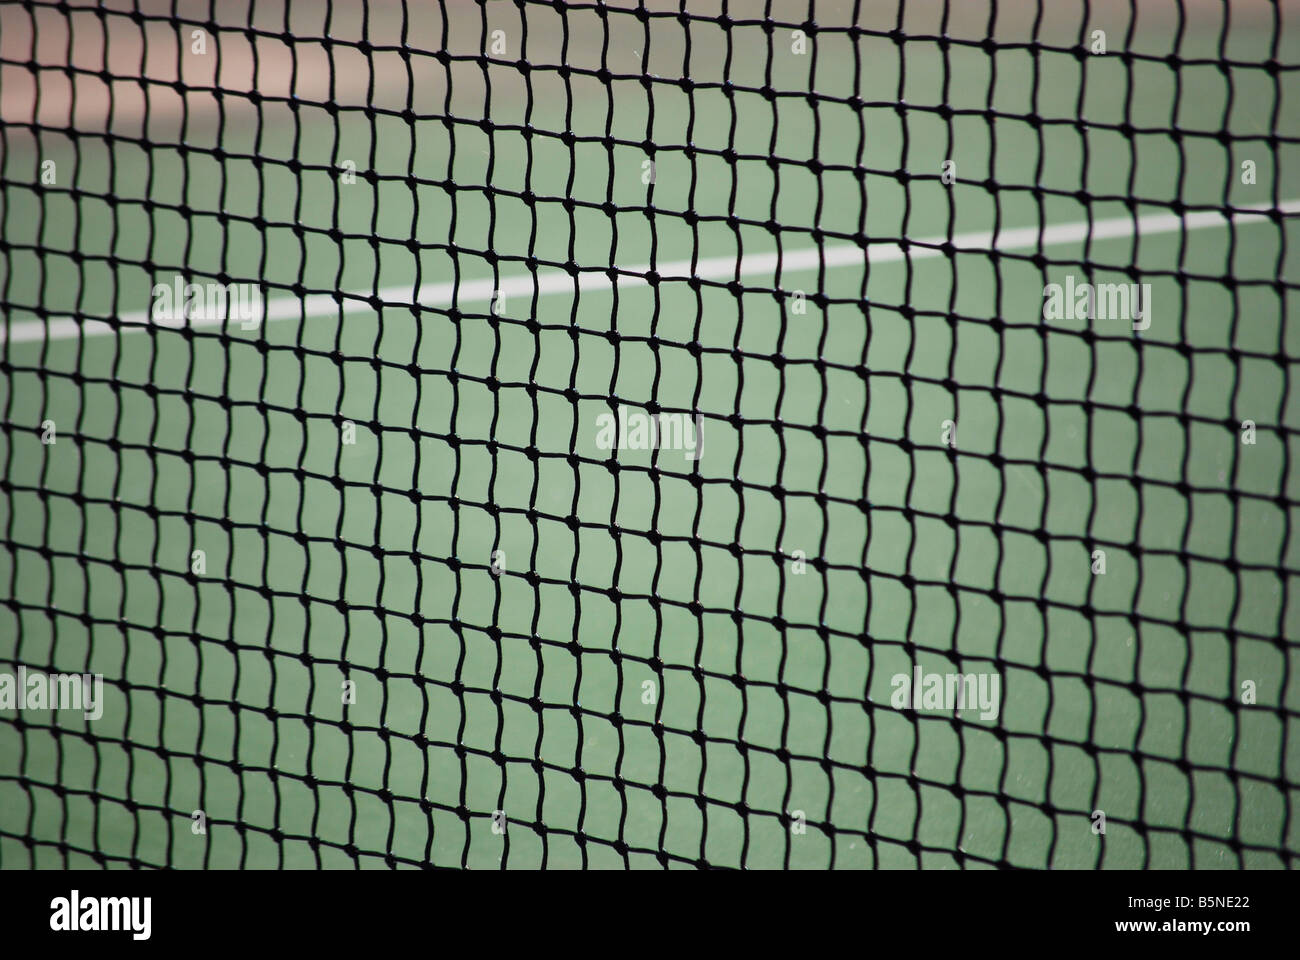 Close up image de filet de tennis Banque D'Images